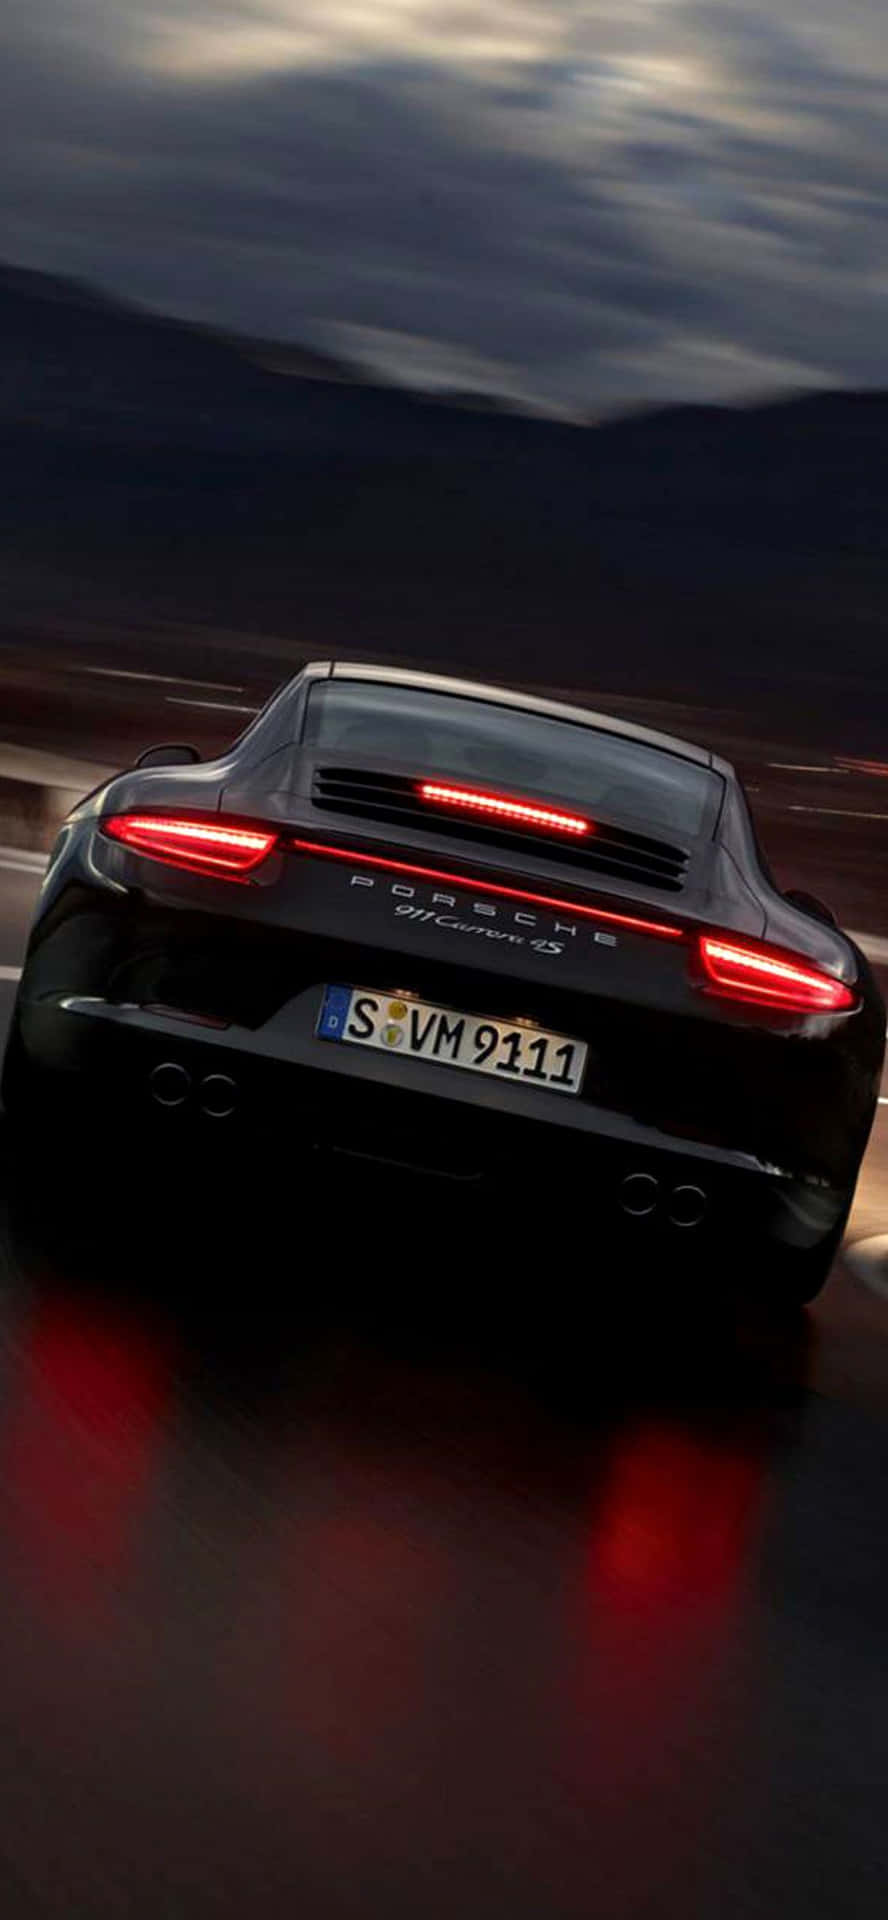 Impresionantefondo De Pantalla De Porsche Para Iphone. Fondo de pantalla